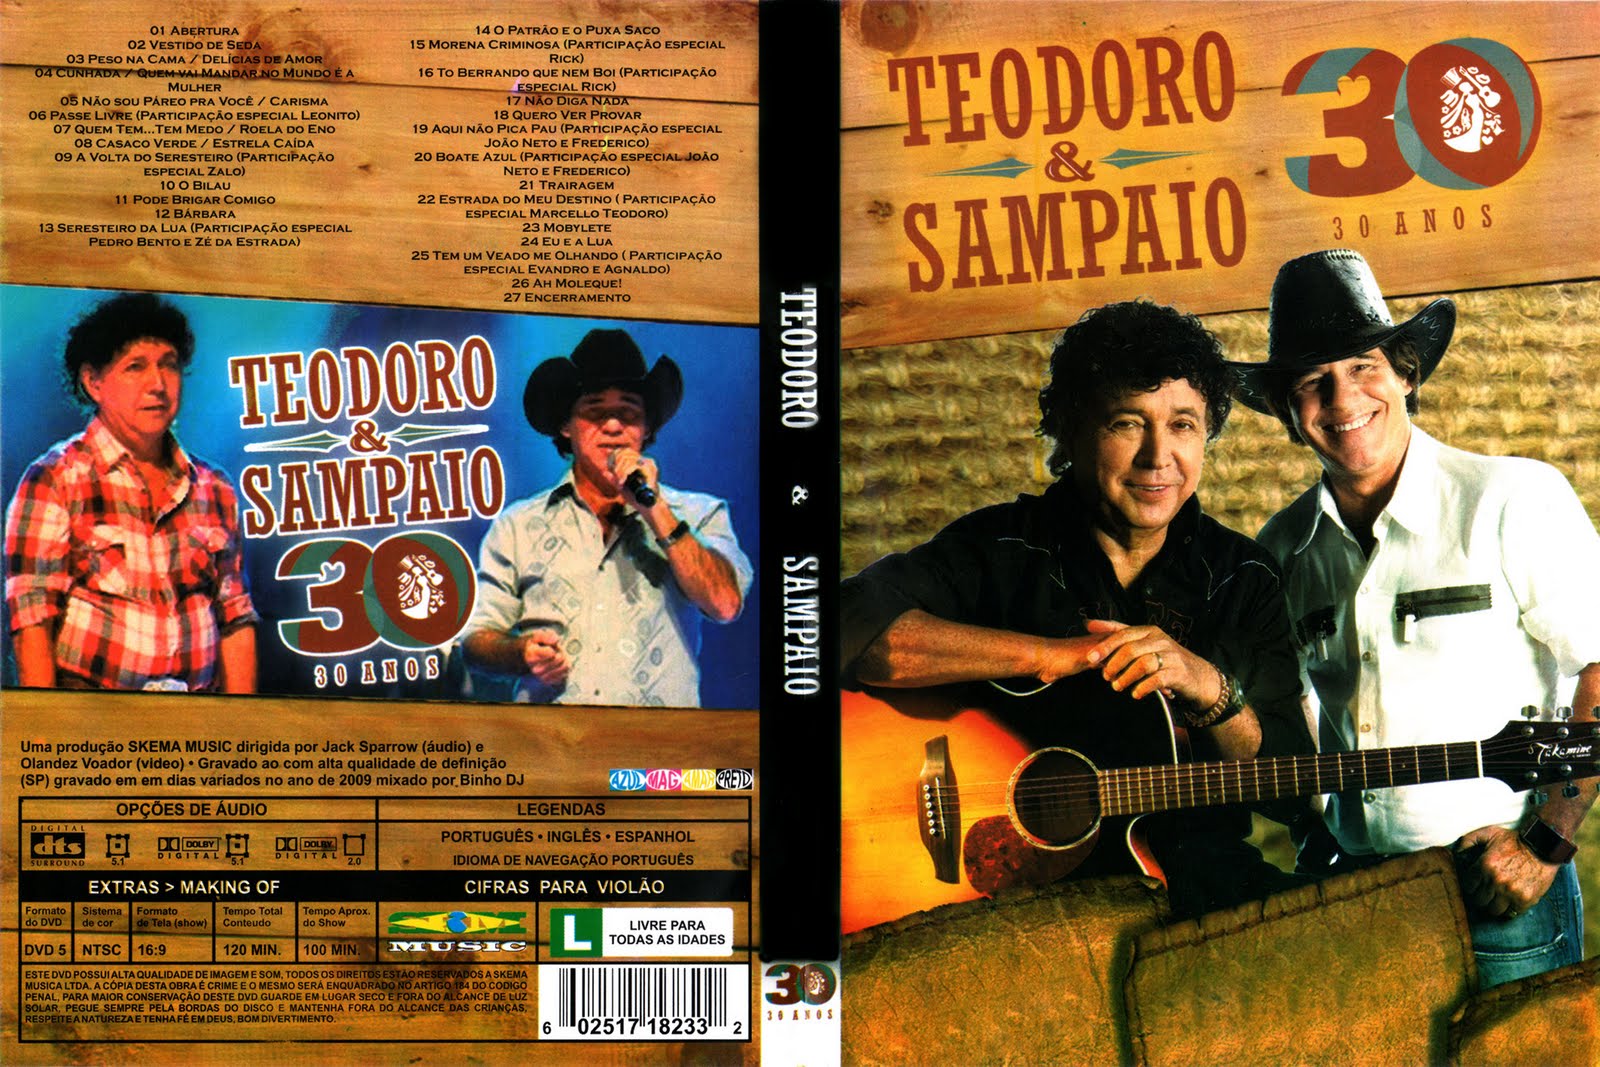 Download Cd Teodoro Sampaio 2012